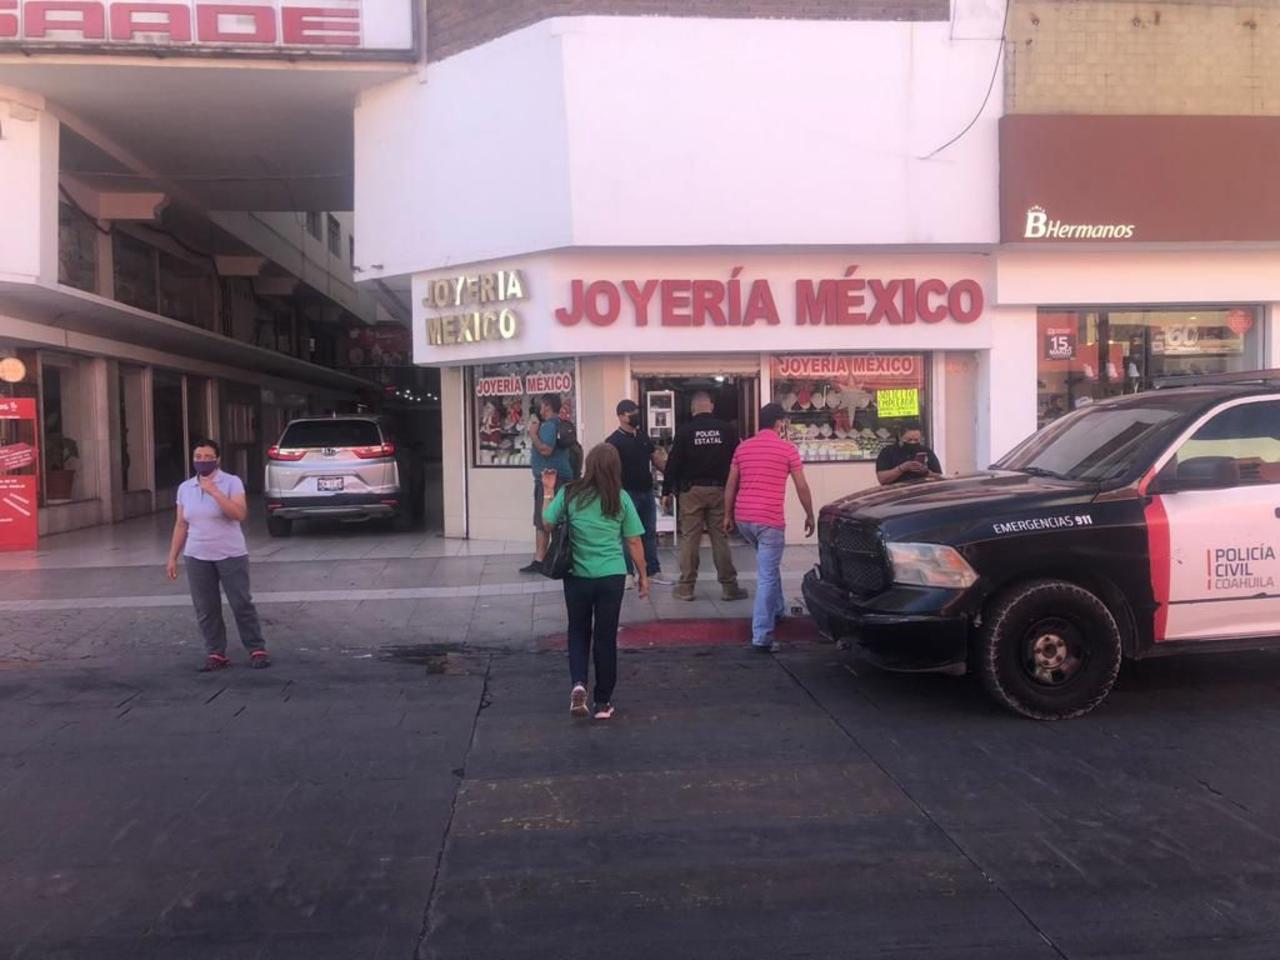 Los hechos se registraron minutos después de las 10:00 horas en la Joyería México, ubicada en la calle de Aldama en la Zona Centro.